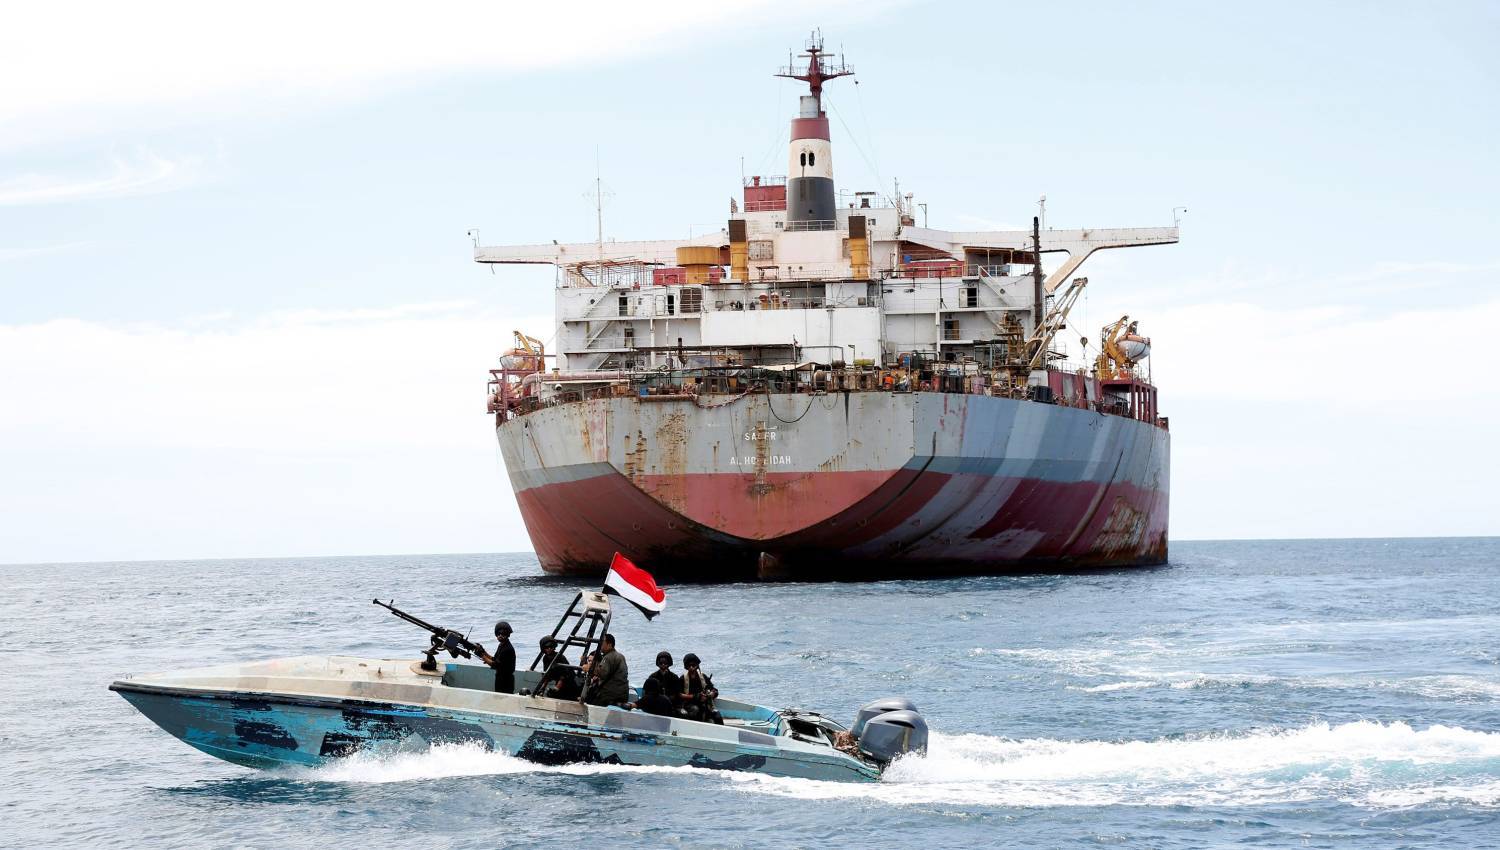 הצעות נדיבות אמריקאיות לתימן להרים את המצור הימי שלה מישראל